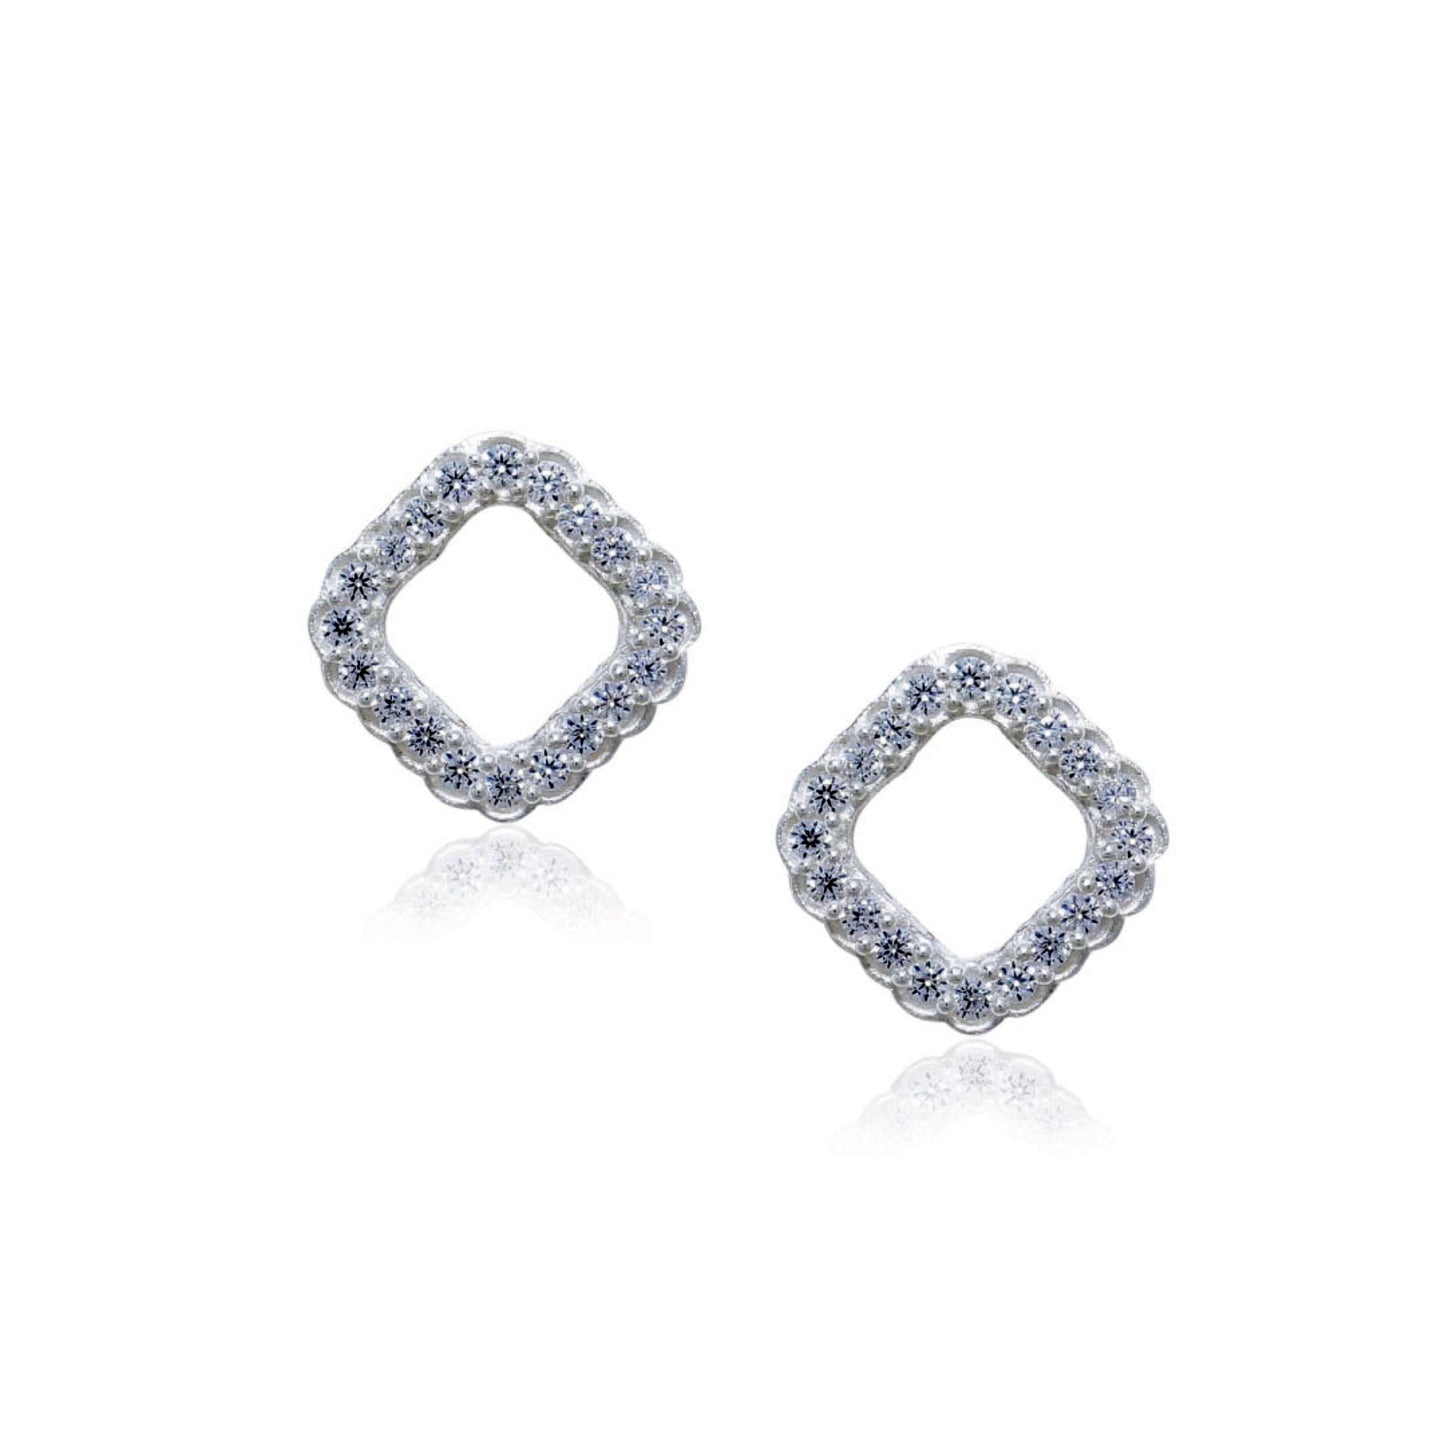 Rom com diamond Stud Earrings